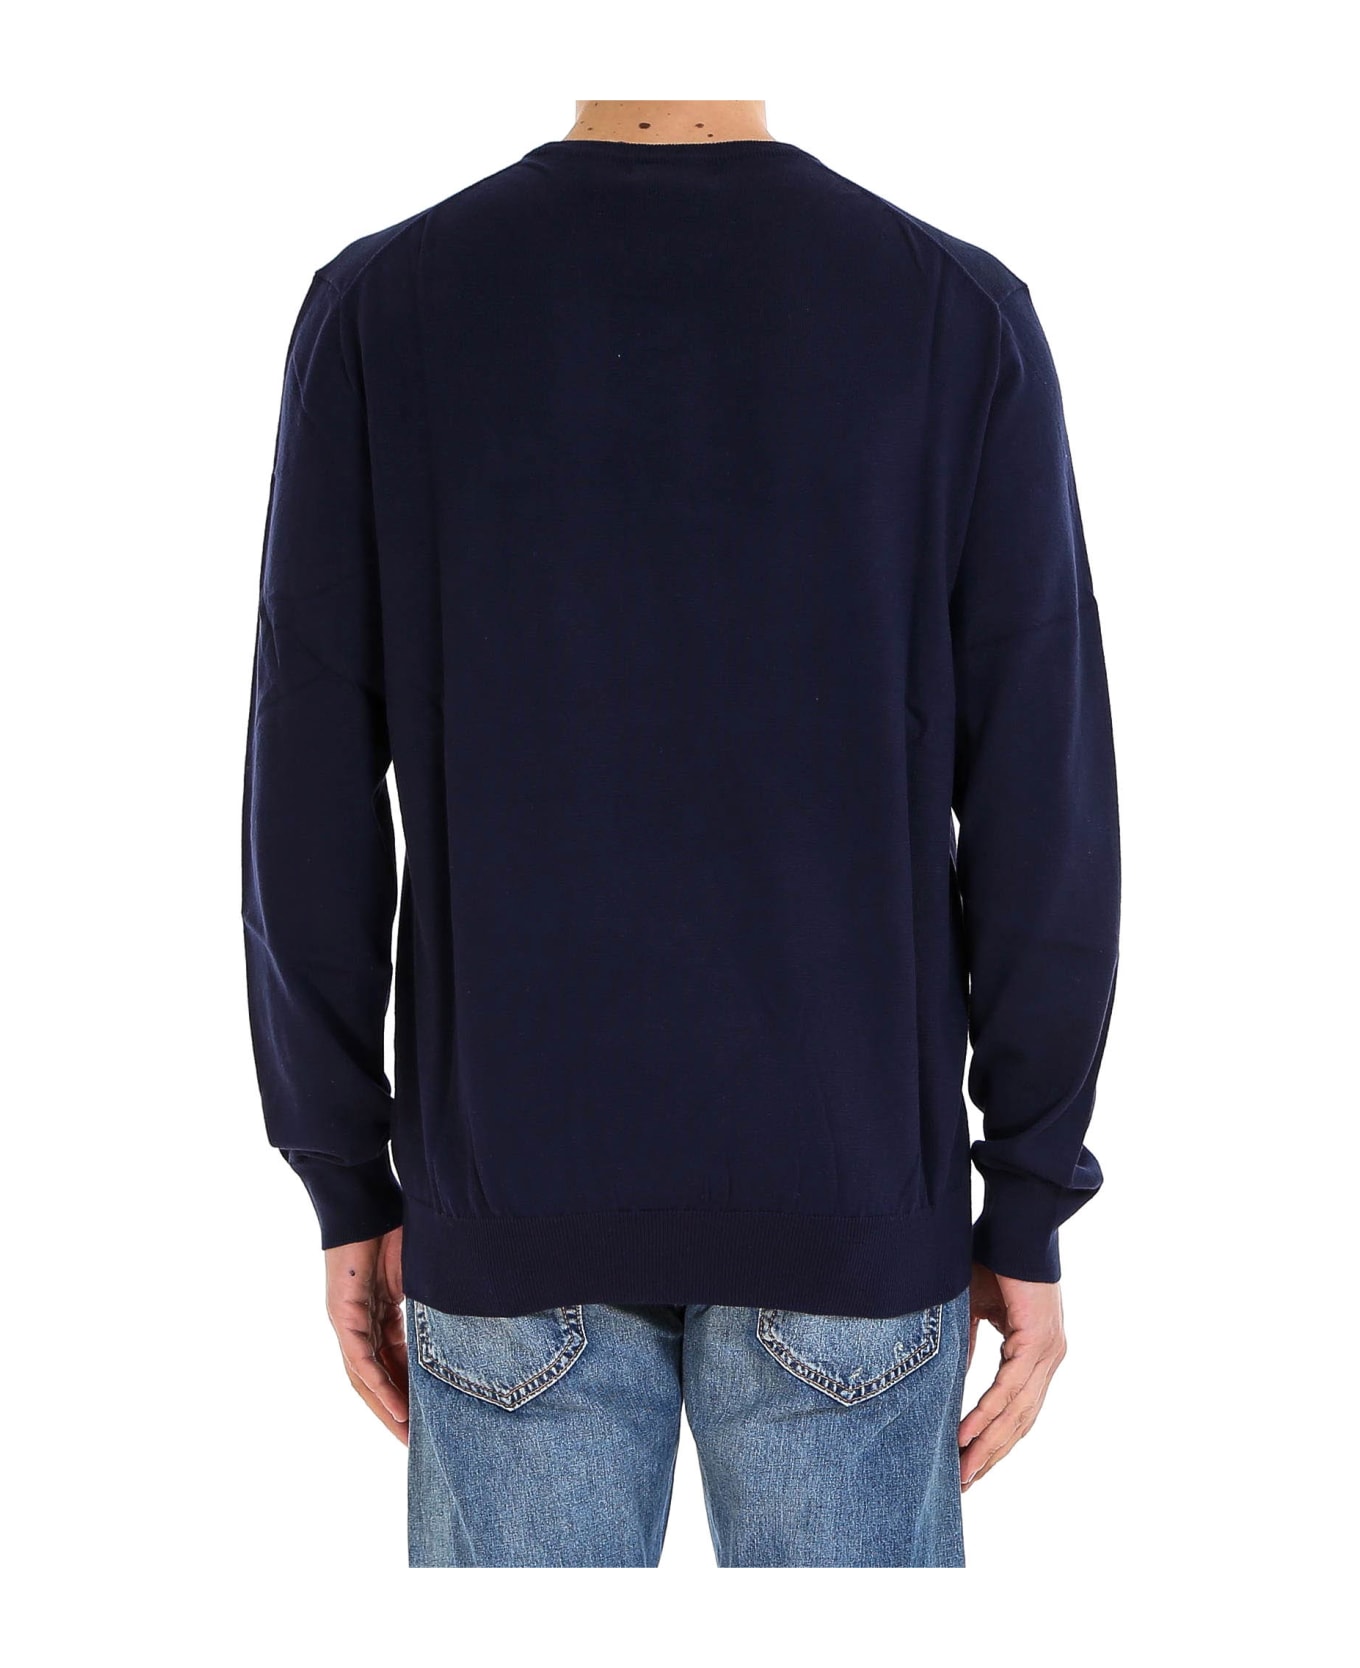 Ralph Lauren Sweater - blue